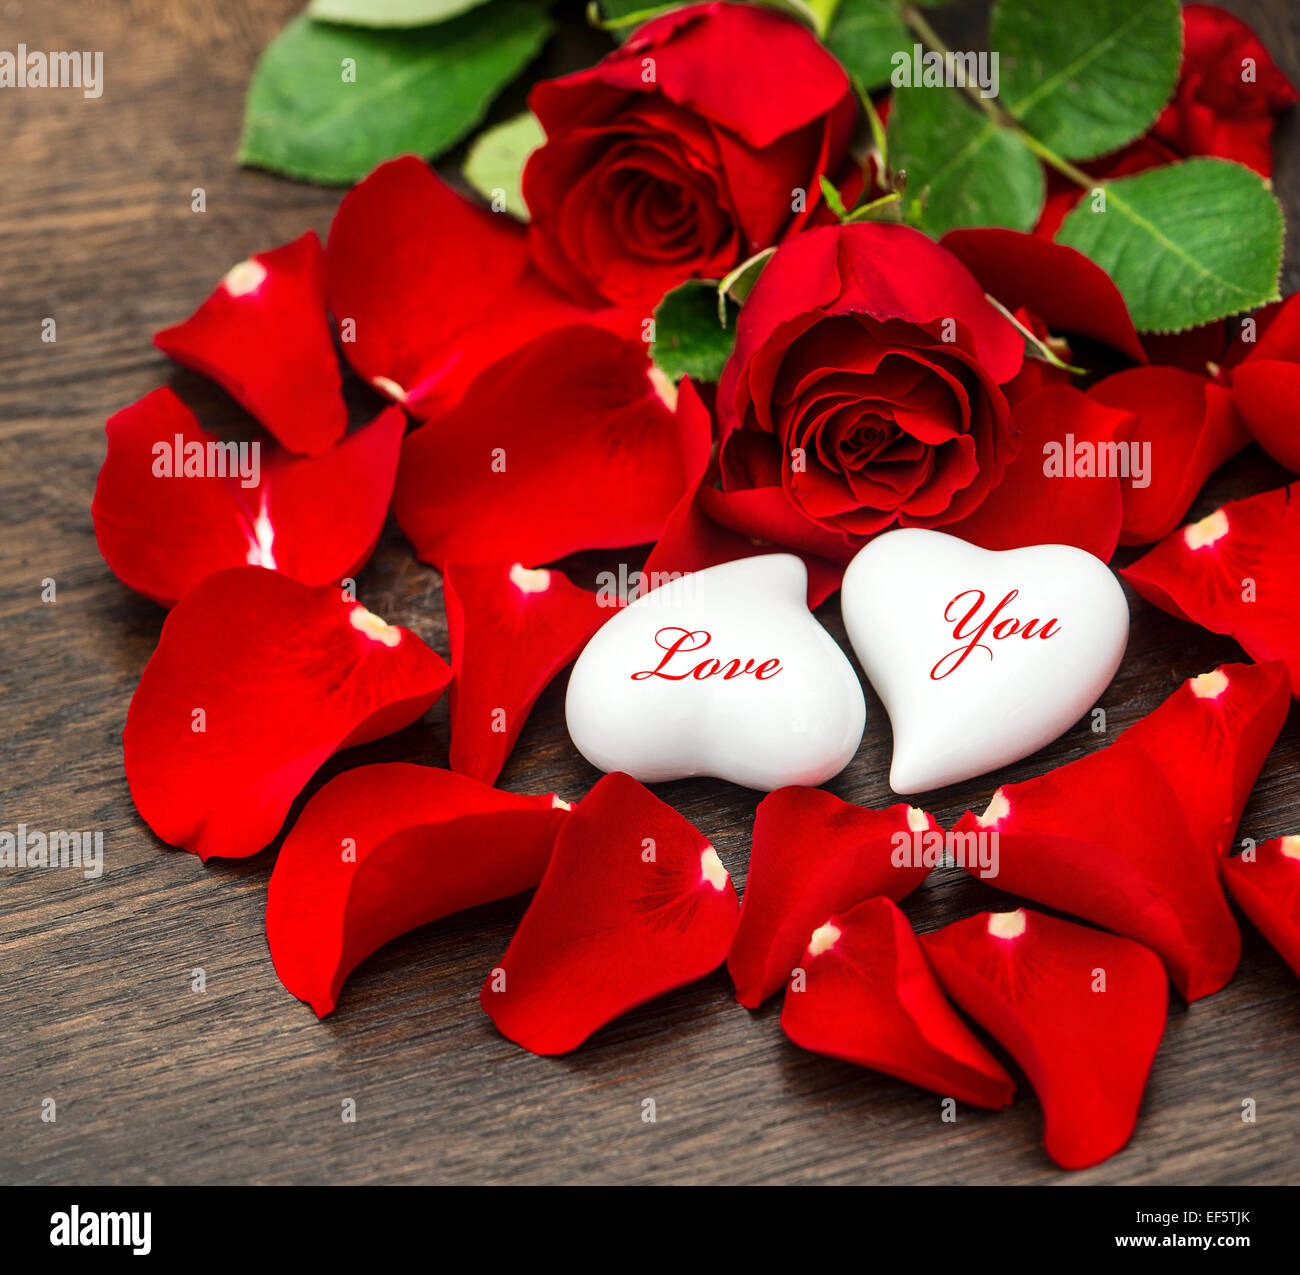 Valentinstag Tag Dekoration rote Rosen und zwei Herzen. Ferien-Hintergrund. Beispieltext Love You Stockfoto